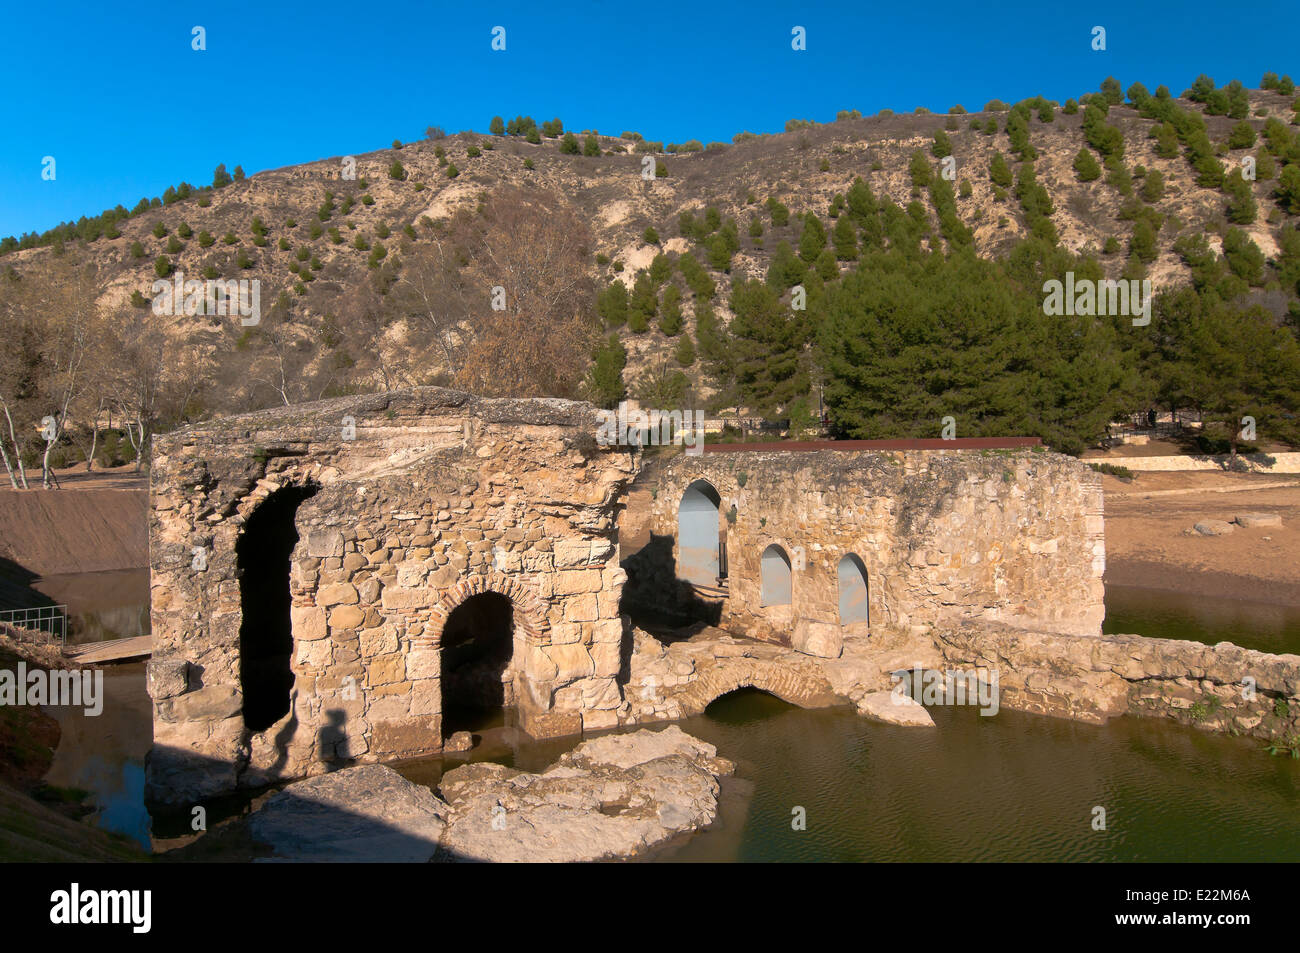 Ancien moulin à eau, l'arabe, la route touristique des bandits, Jauja, province de Cordoue, Andalousie, Espagne, Europe Banque D'Images